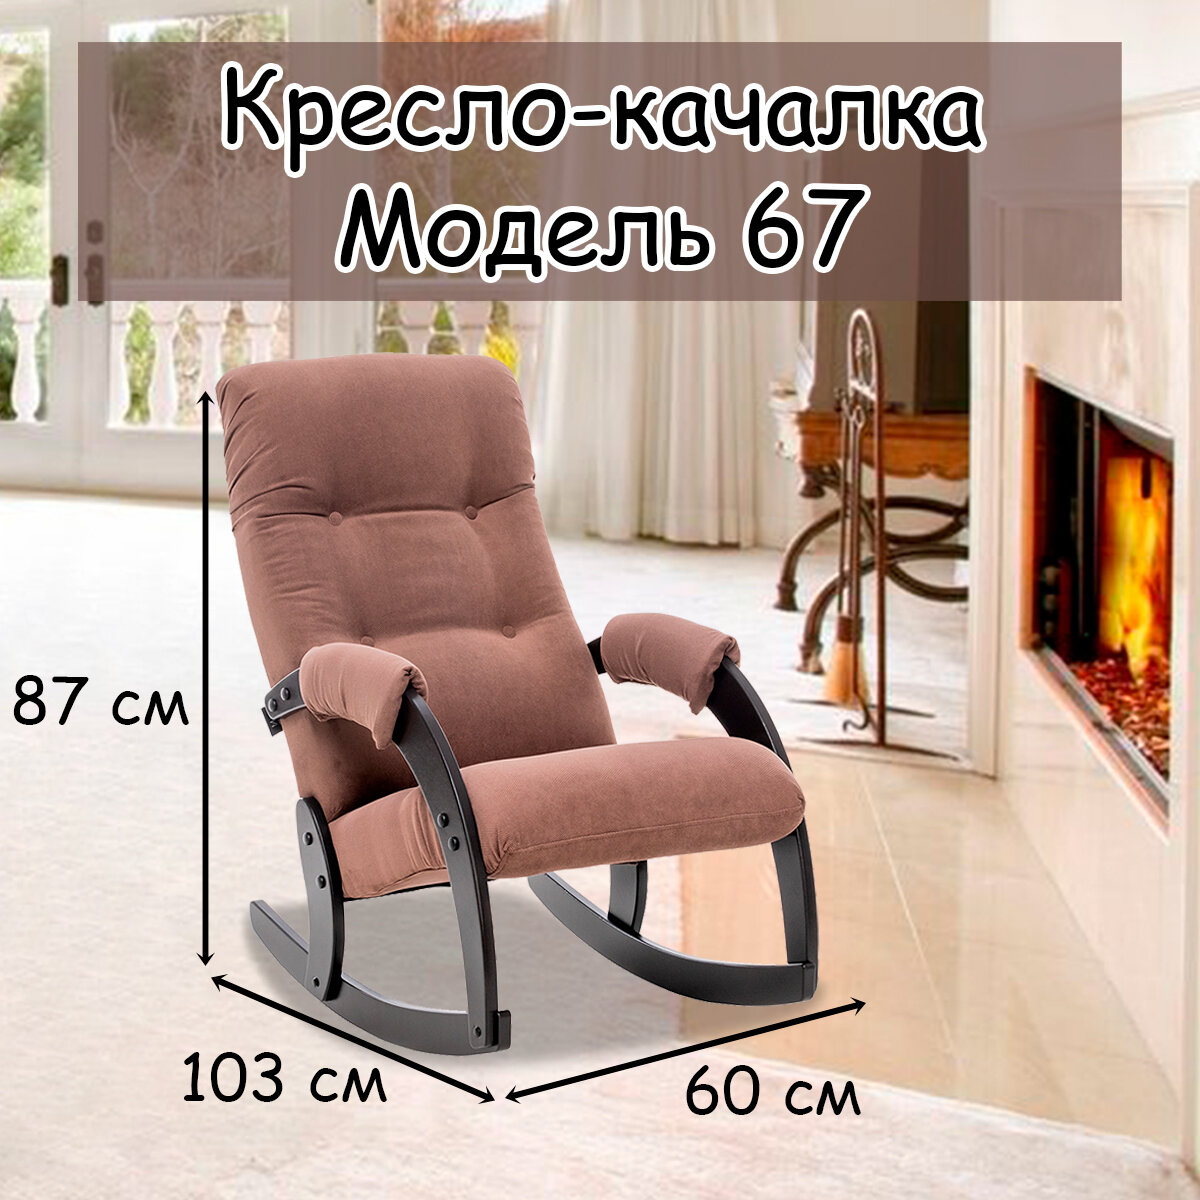 Кресло-качалка для взрослых 54х95х100 см, модель 67, verona, цвет: Brown (коричневый), каркас: Venge (черный)